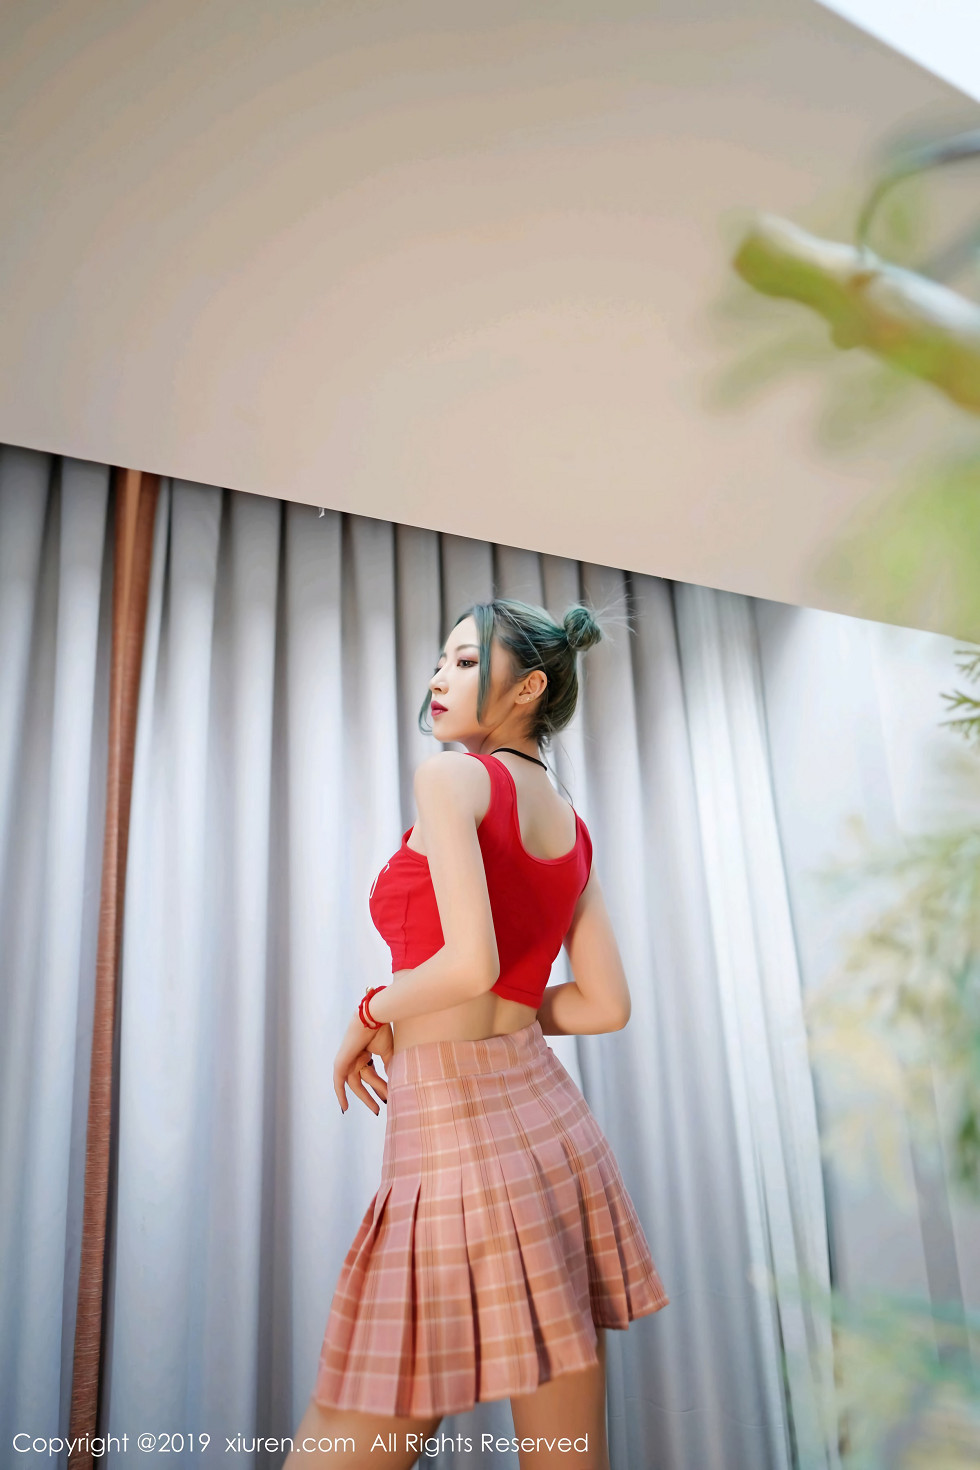 嫩模贾诗晗性感红色抹胸内衣配红色格子裙秀完美身材